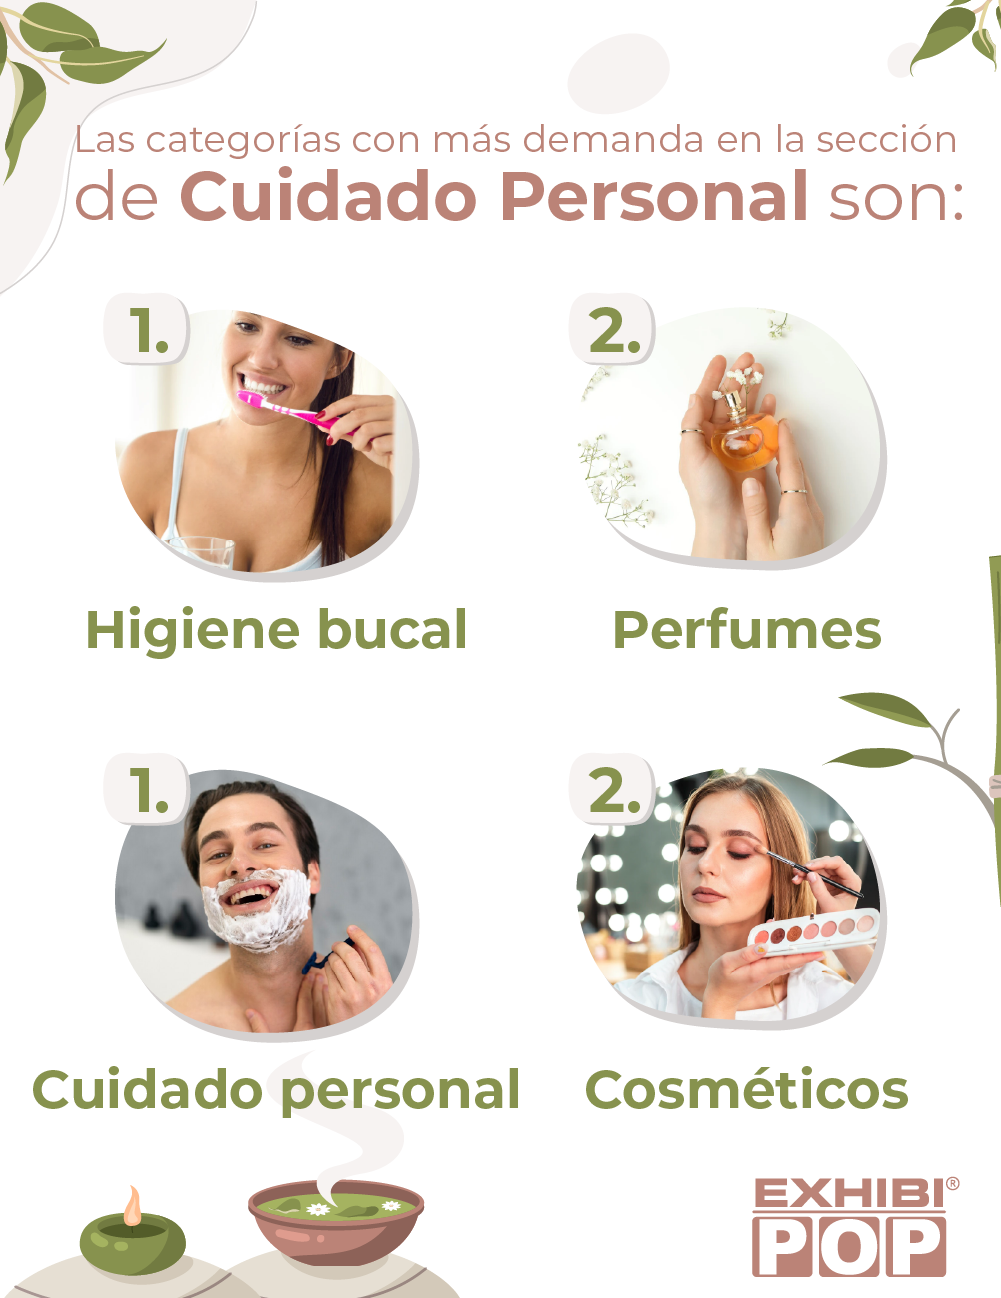 Las categorías más importantes en Cuidado personal son: Higiene bucal, Perfumes, cuidado personal y cosméticos